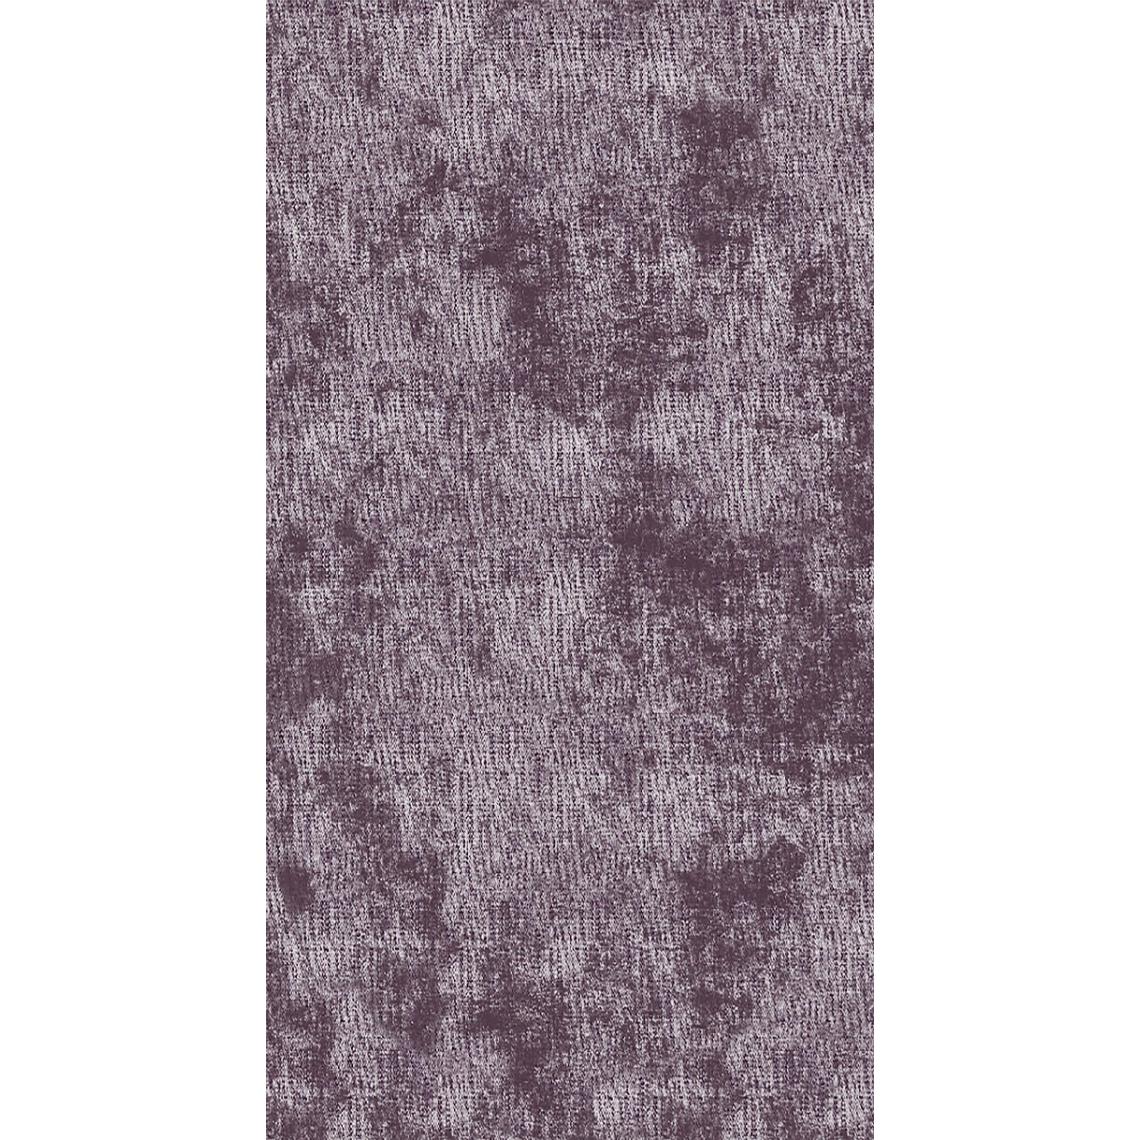 Homemania - HOMEMANIA Tapis Imprimé Purple 2 - Résumé - Décoration de Maison, tapis d'entrée - Antidérapant - pour Couloir, Cuisine, Chambre, Salon - Multicolore en Polyester, Coton, 80 x 200 cm - Tapis